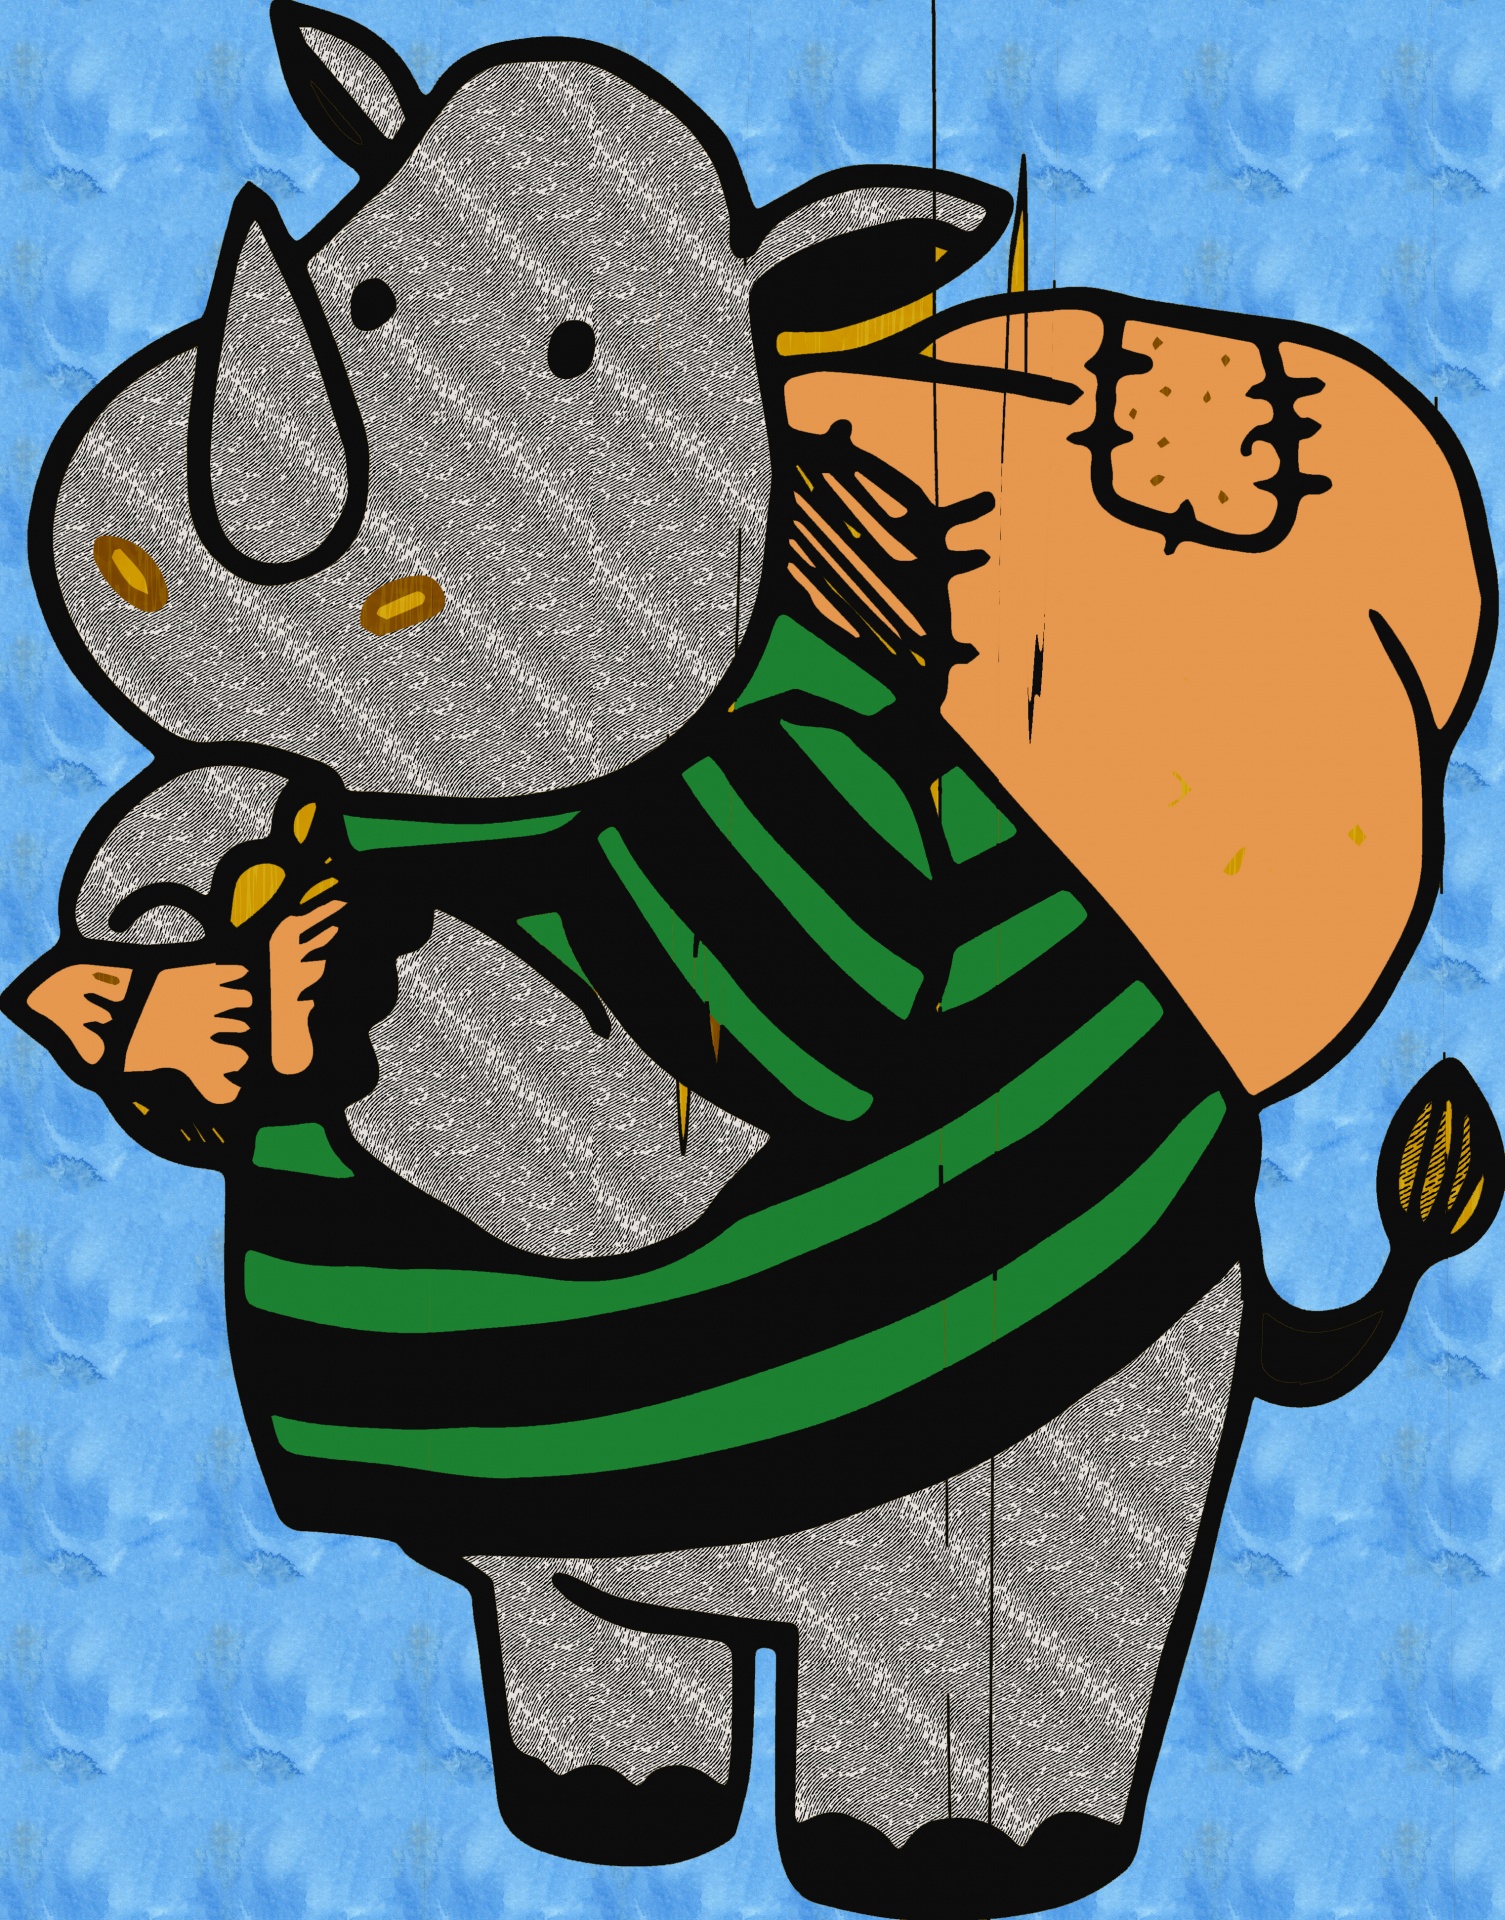 Cute Rhino Illustration